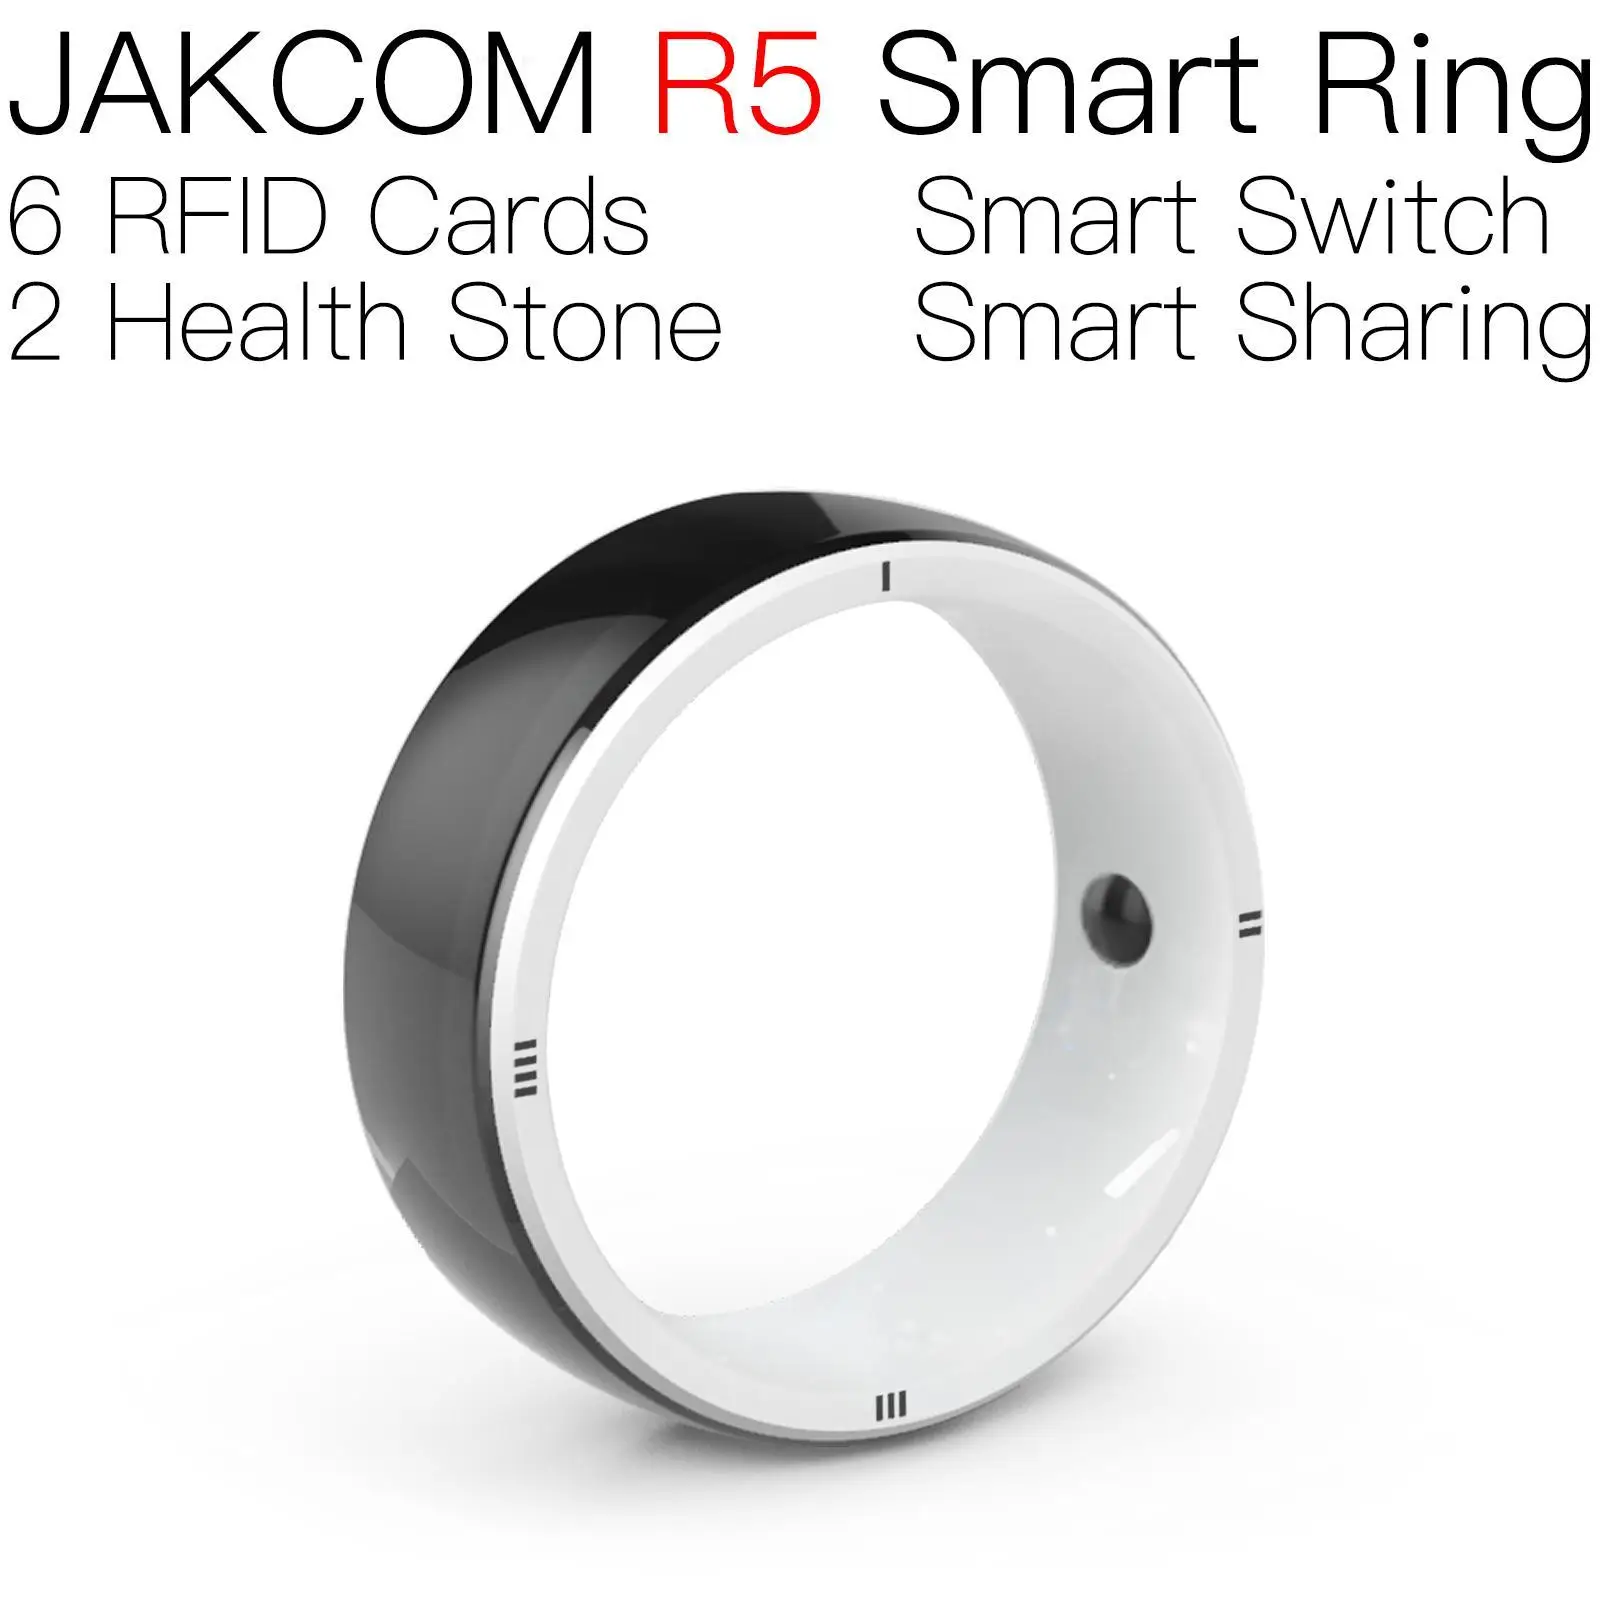 

Умное кольцо JAKCOM R5, позже, чем раньше, Юлиана, Радиочастотная Идентификация большого радиуса действия, фигурки, Русские наклейки hbo max premium, 1 год